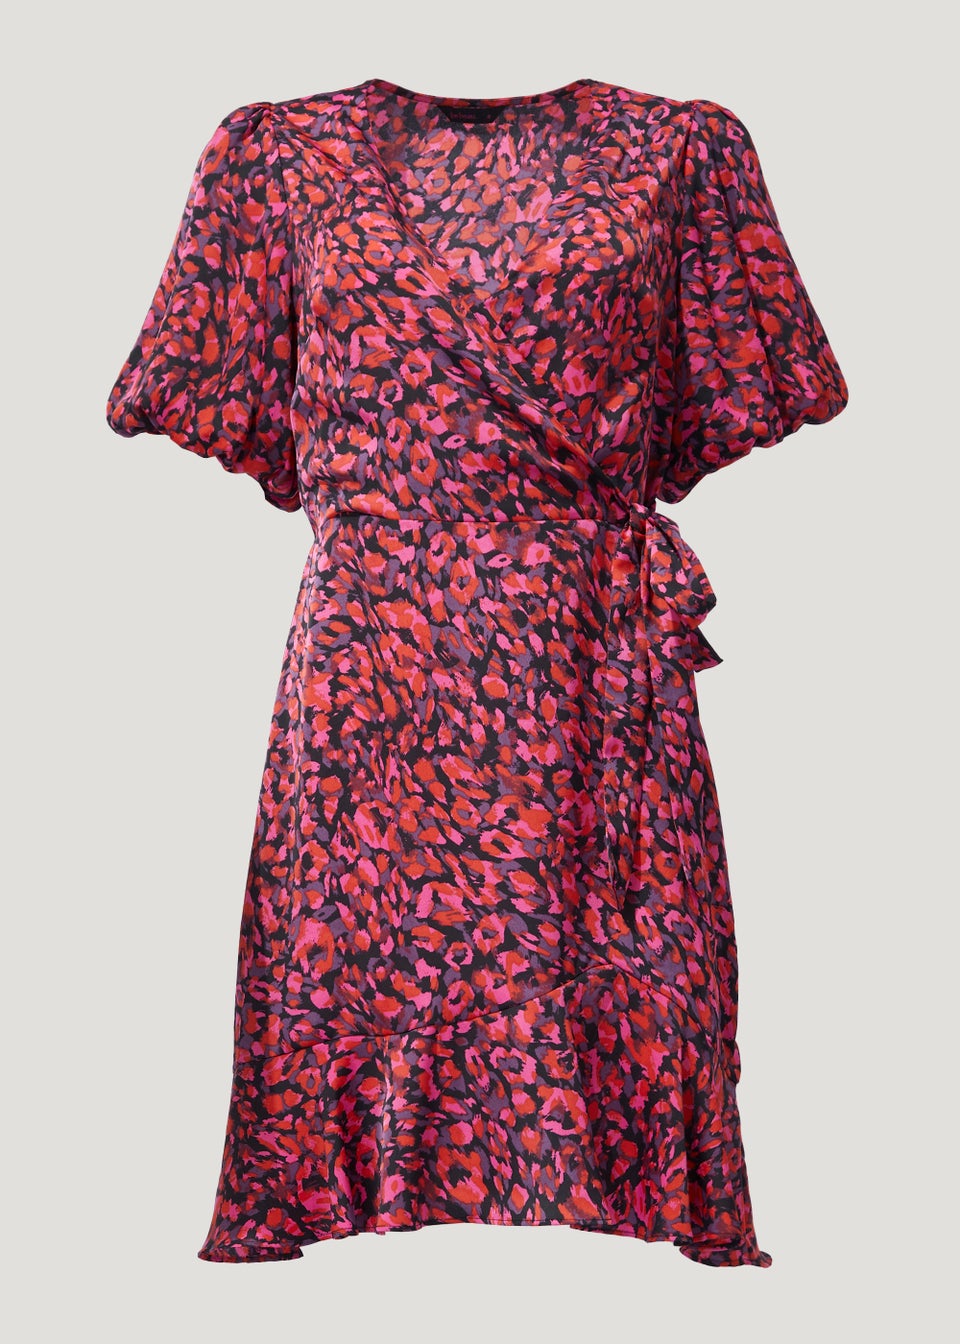 Be Beau Pink Leopard Print Frill Mini Dress